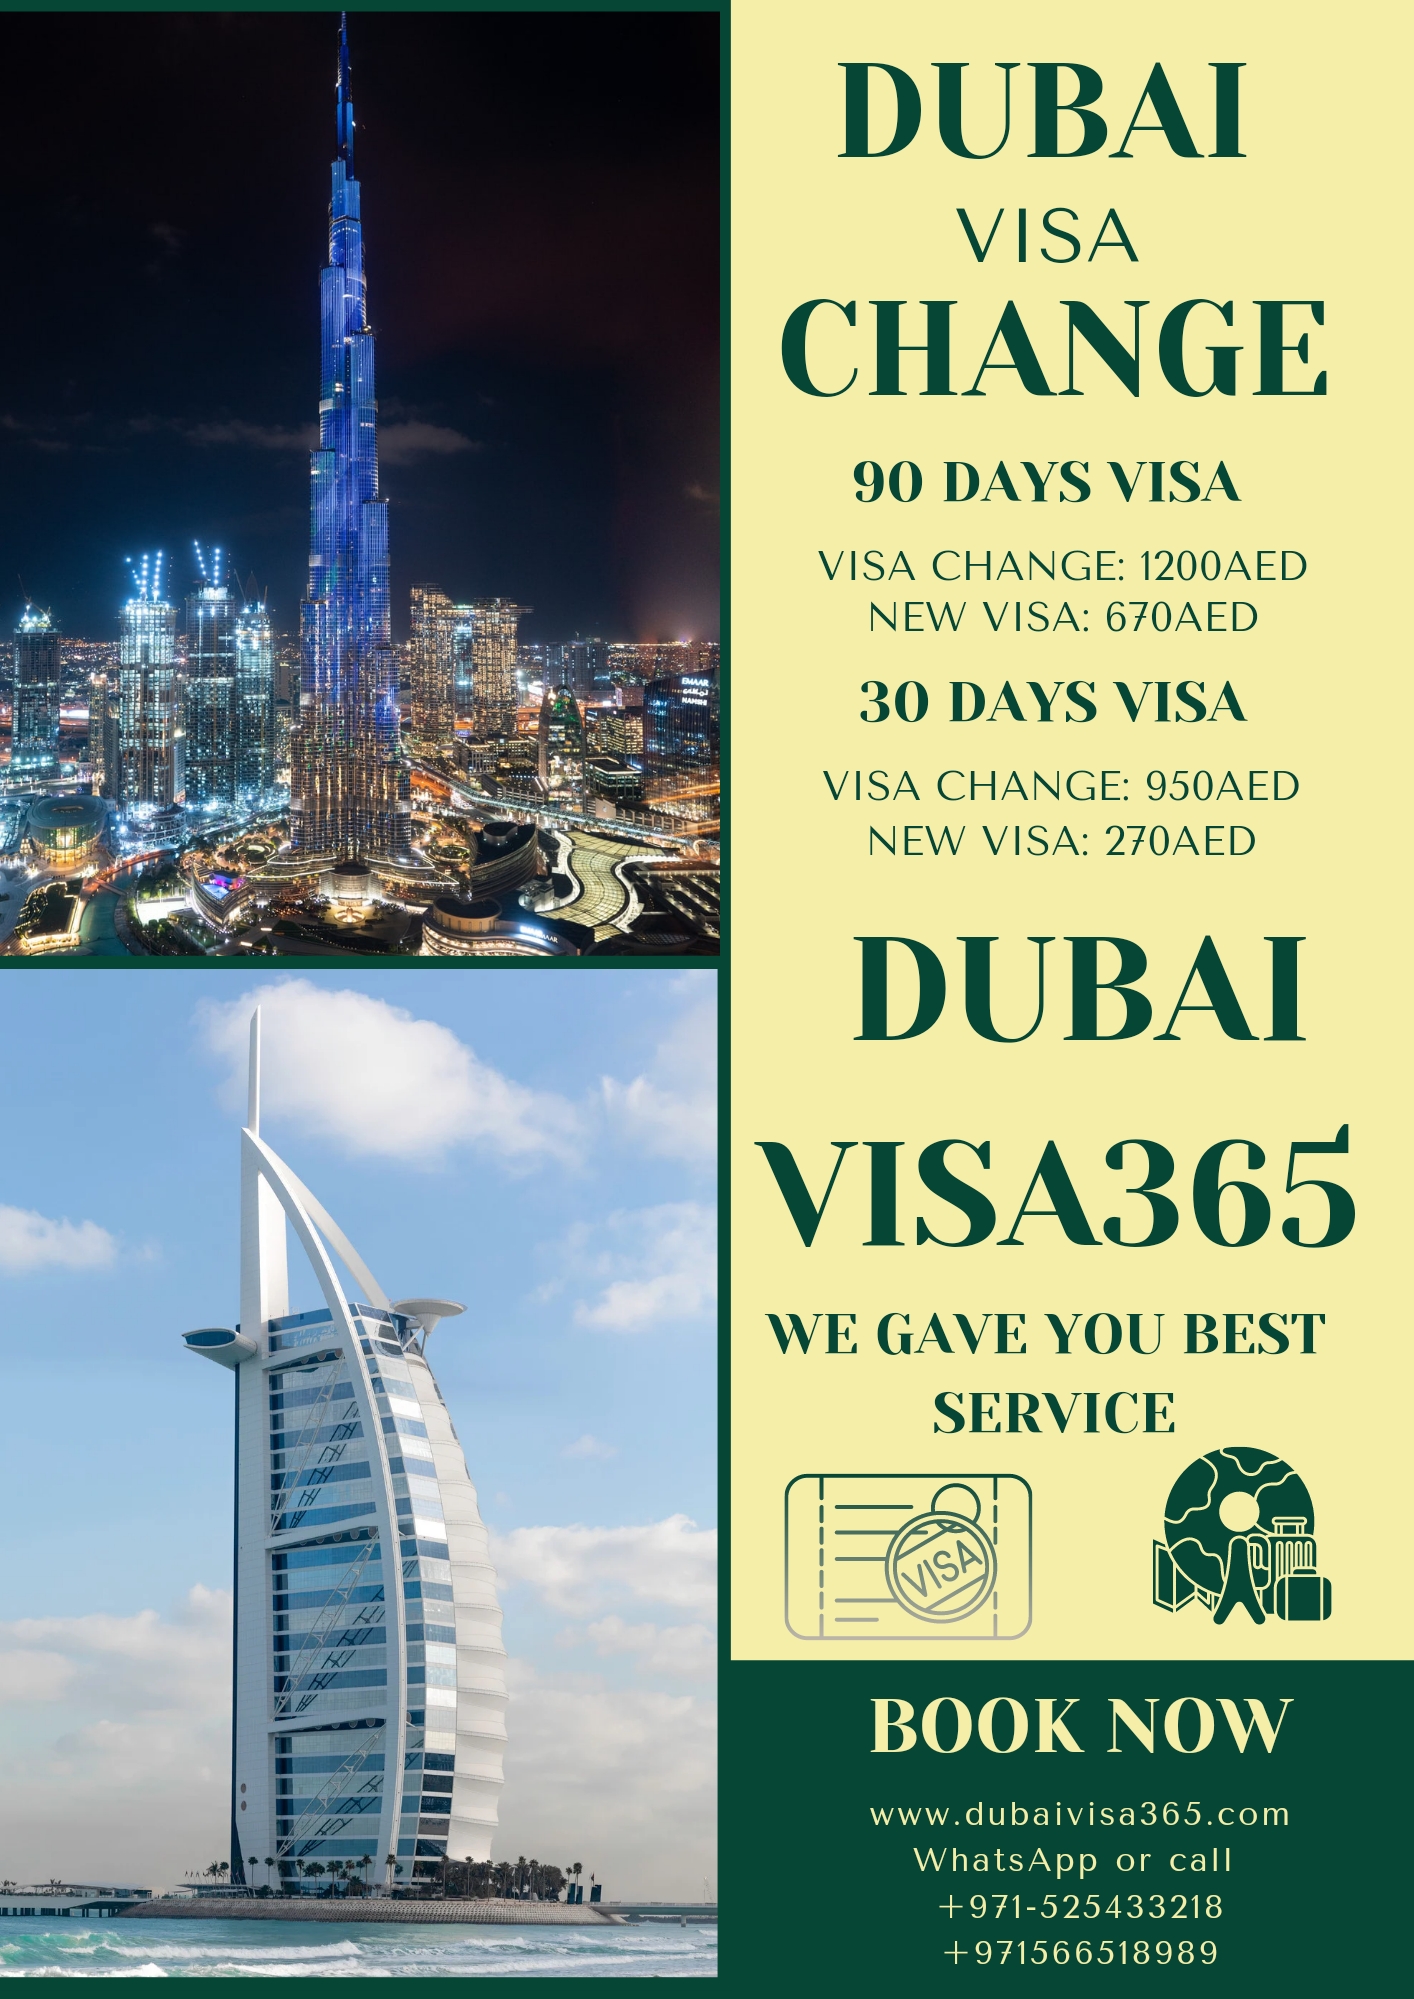 Dubai visa change